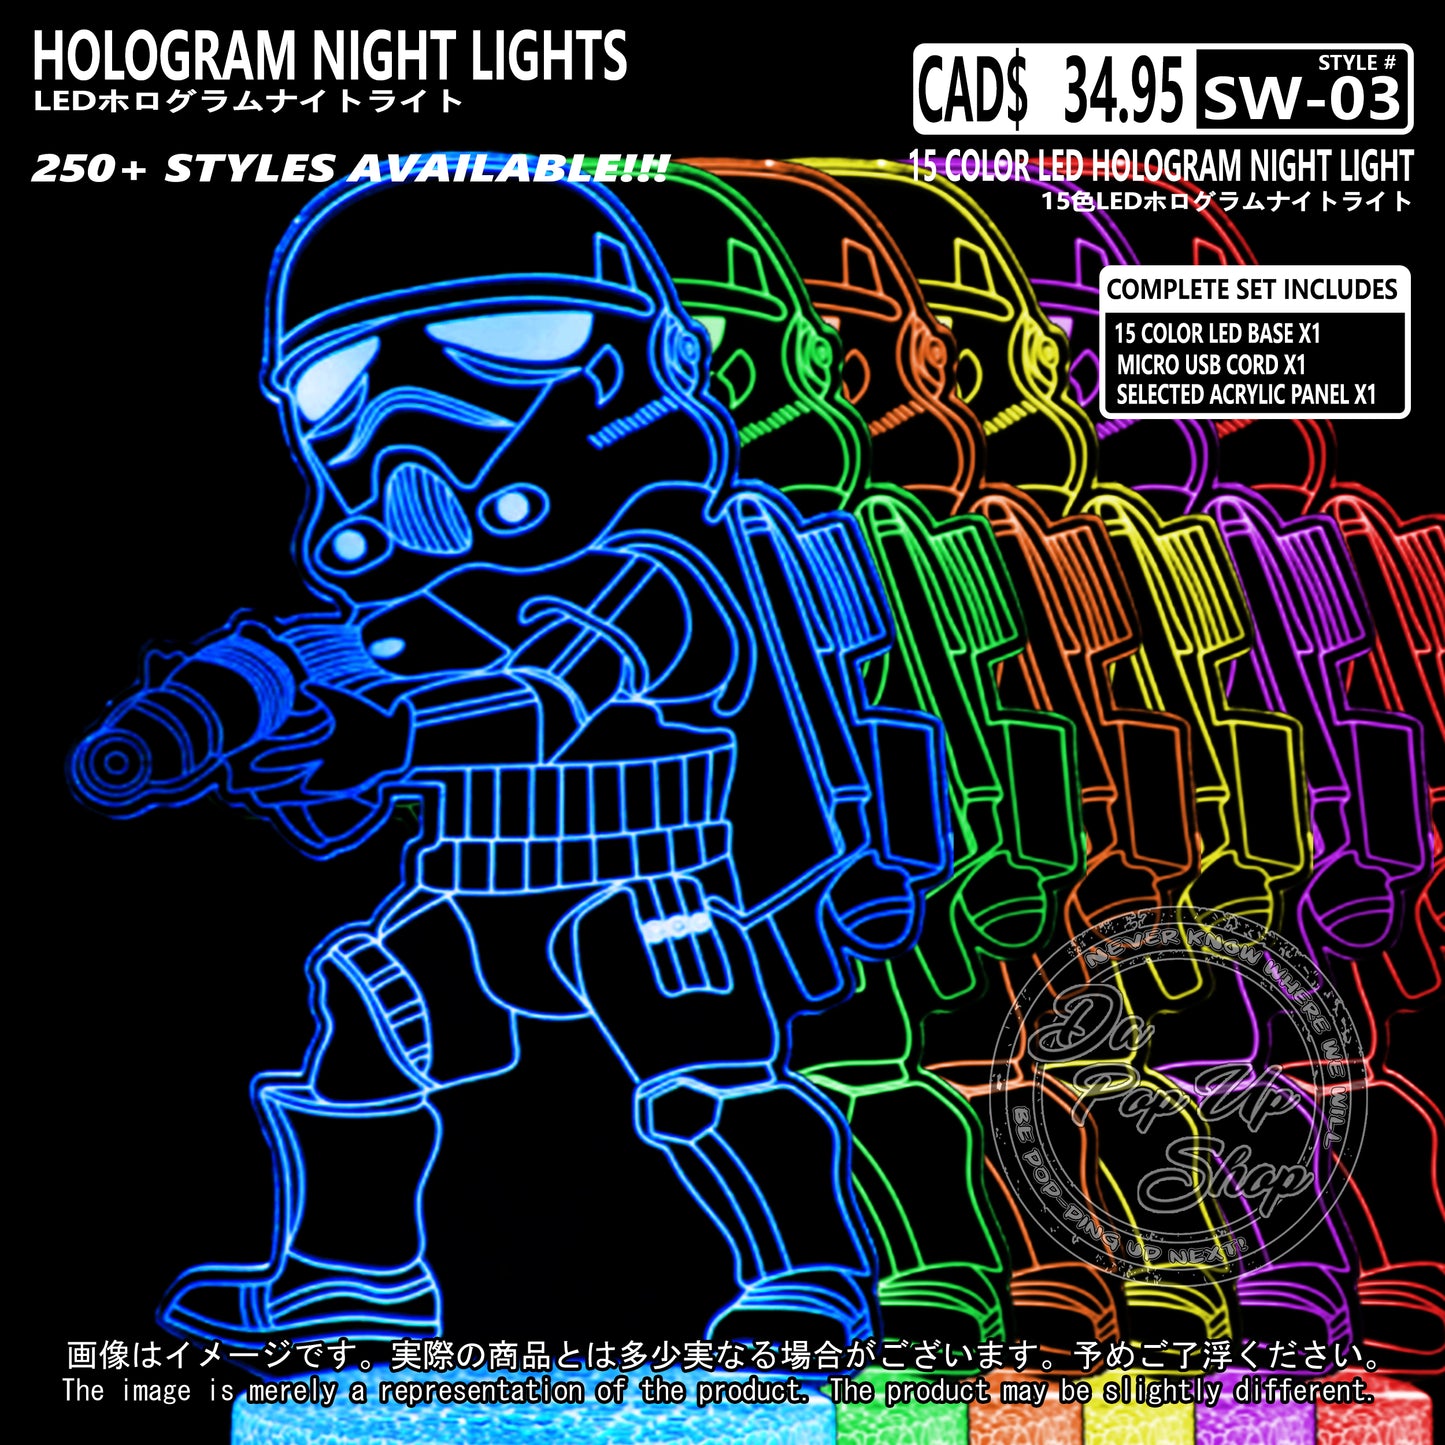 (SW-03) STROMTROOPER Star Wars Hologram LED Night Light